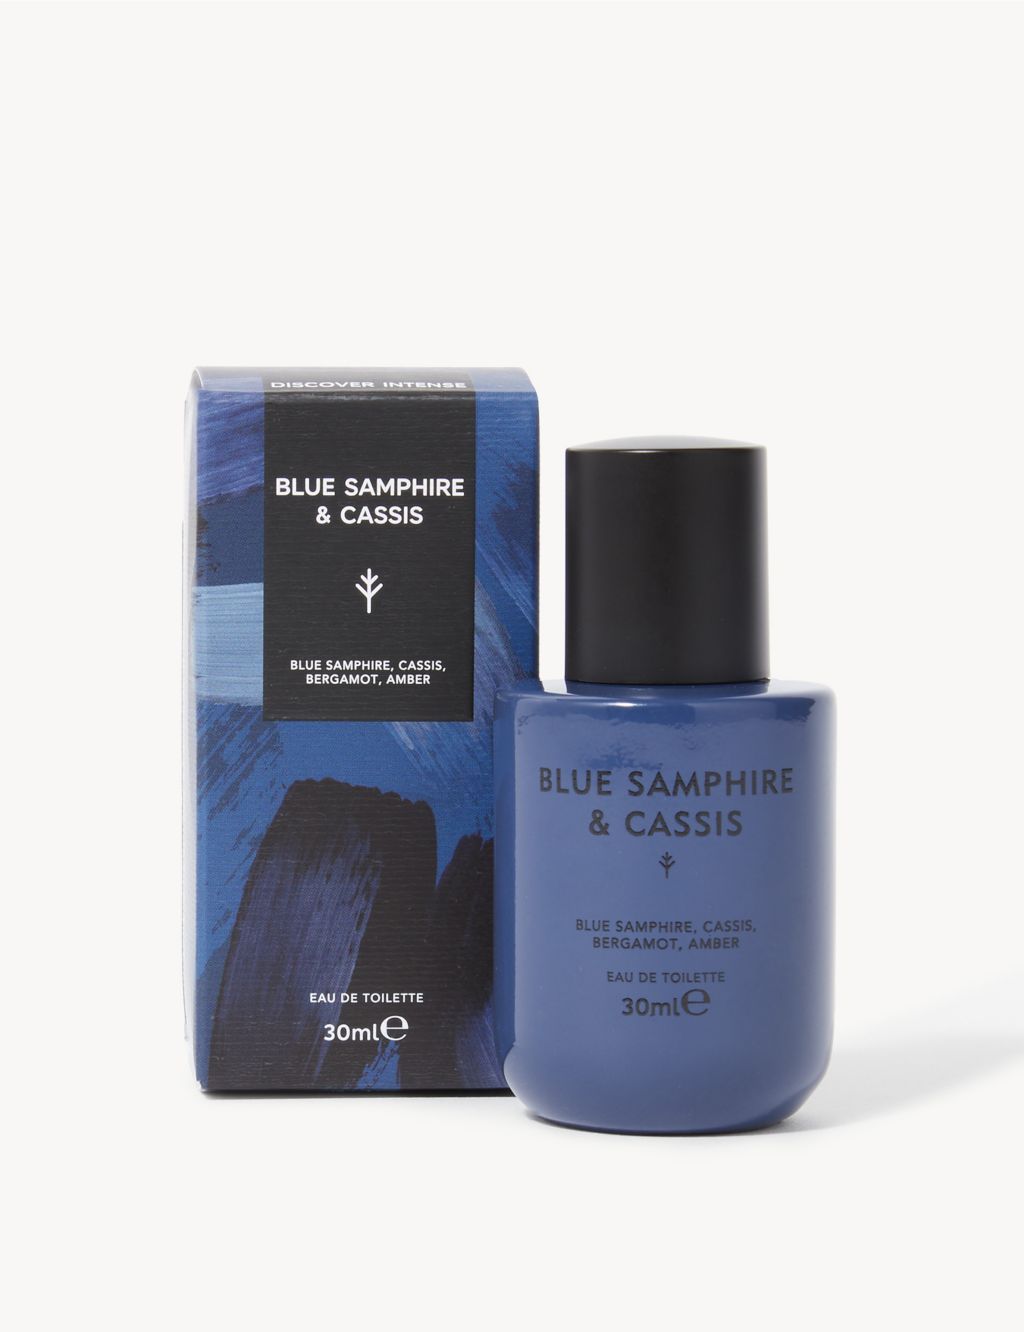 Blue Samphire & Cassis Eau De Toilette 30ml 2 of 2